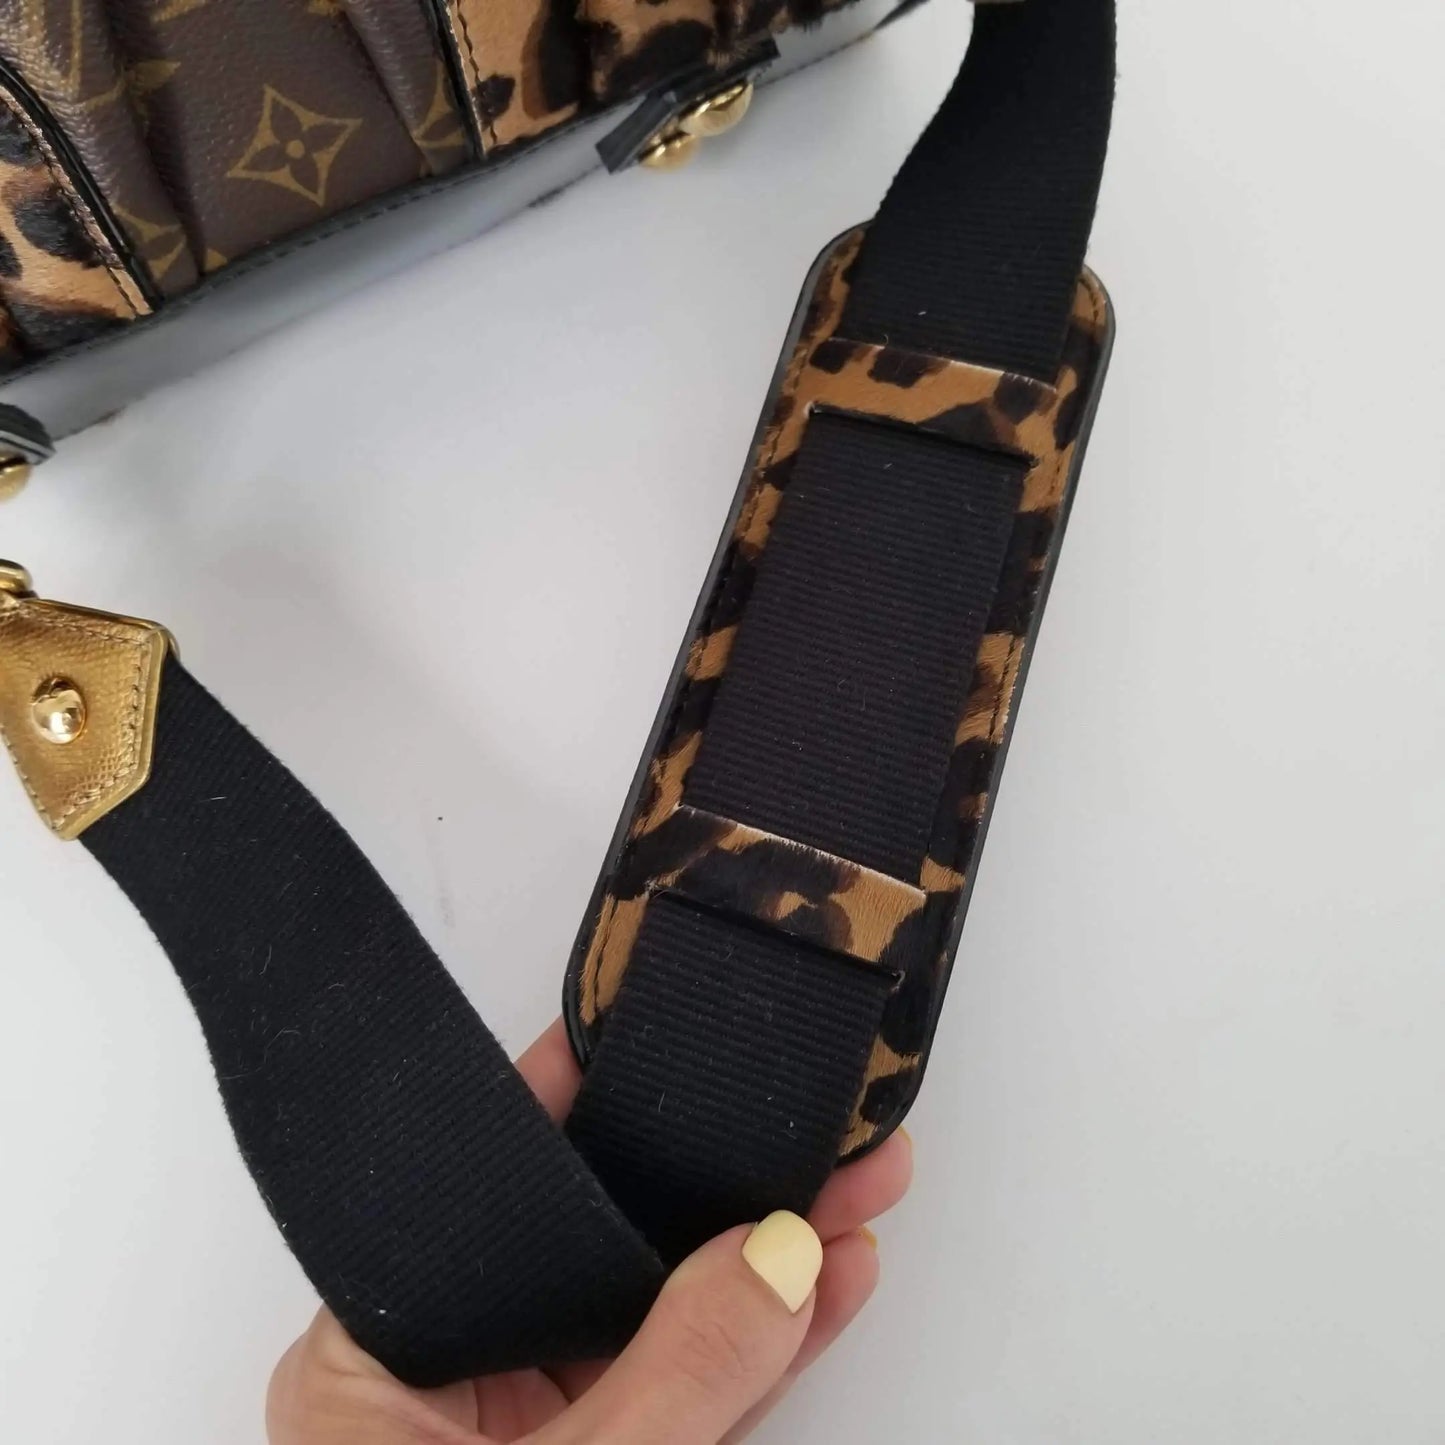 Louis Vuitton Louis Vuitton Adele Leopard Stephen Sprouse Limited Edition bag LVBagaholic